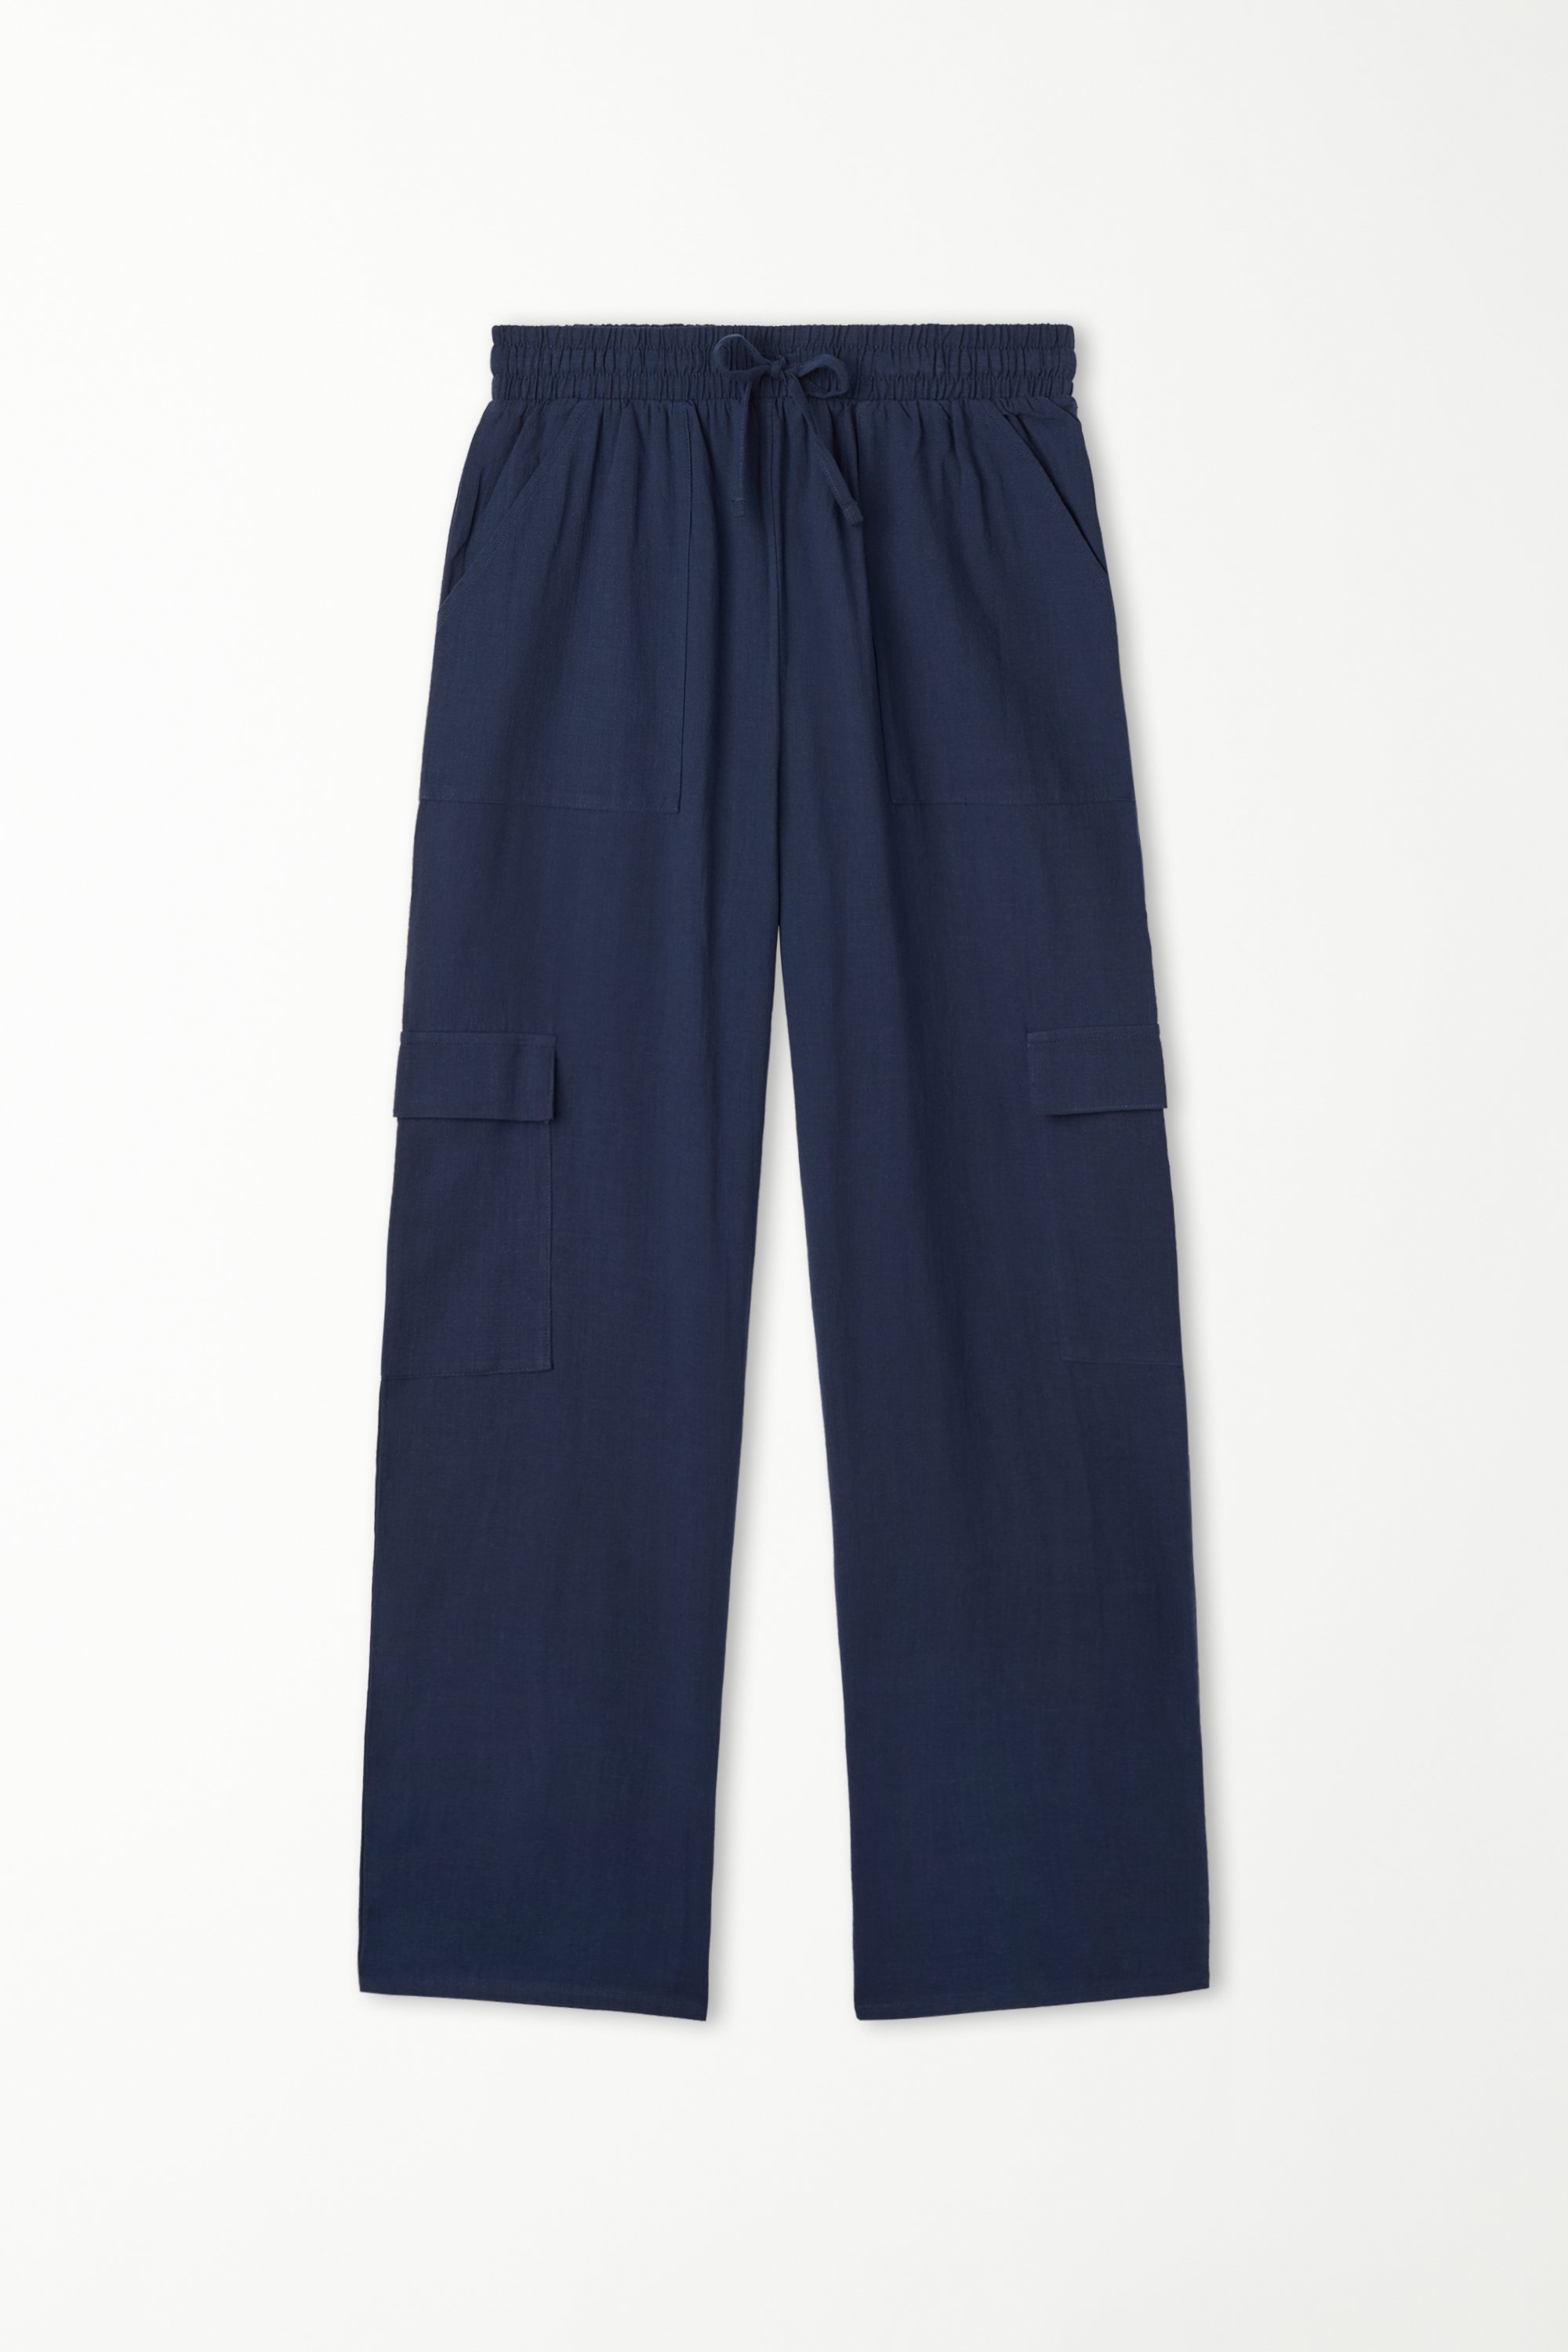 Pantaloni Lunghi in 100% Cotone Super Leggero con Tasche